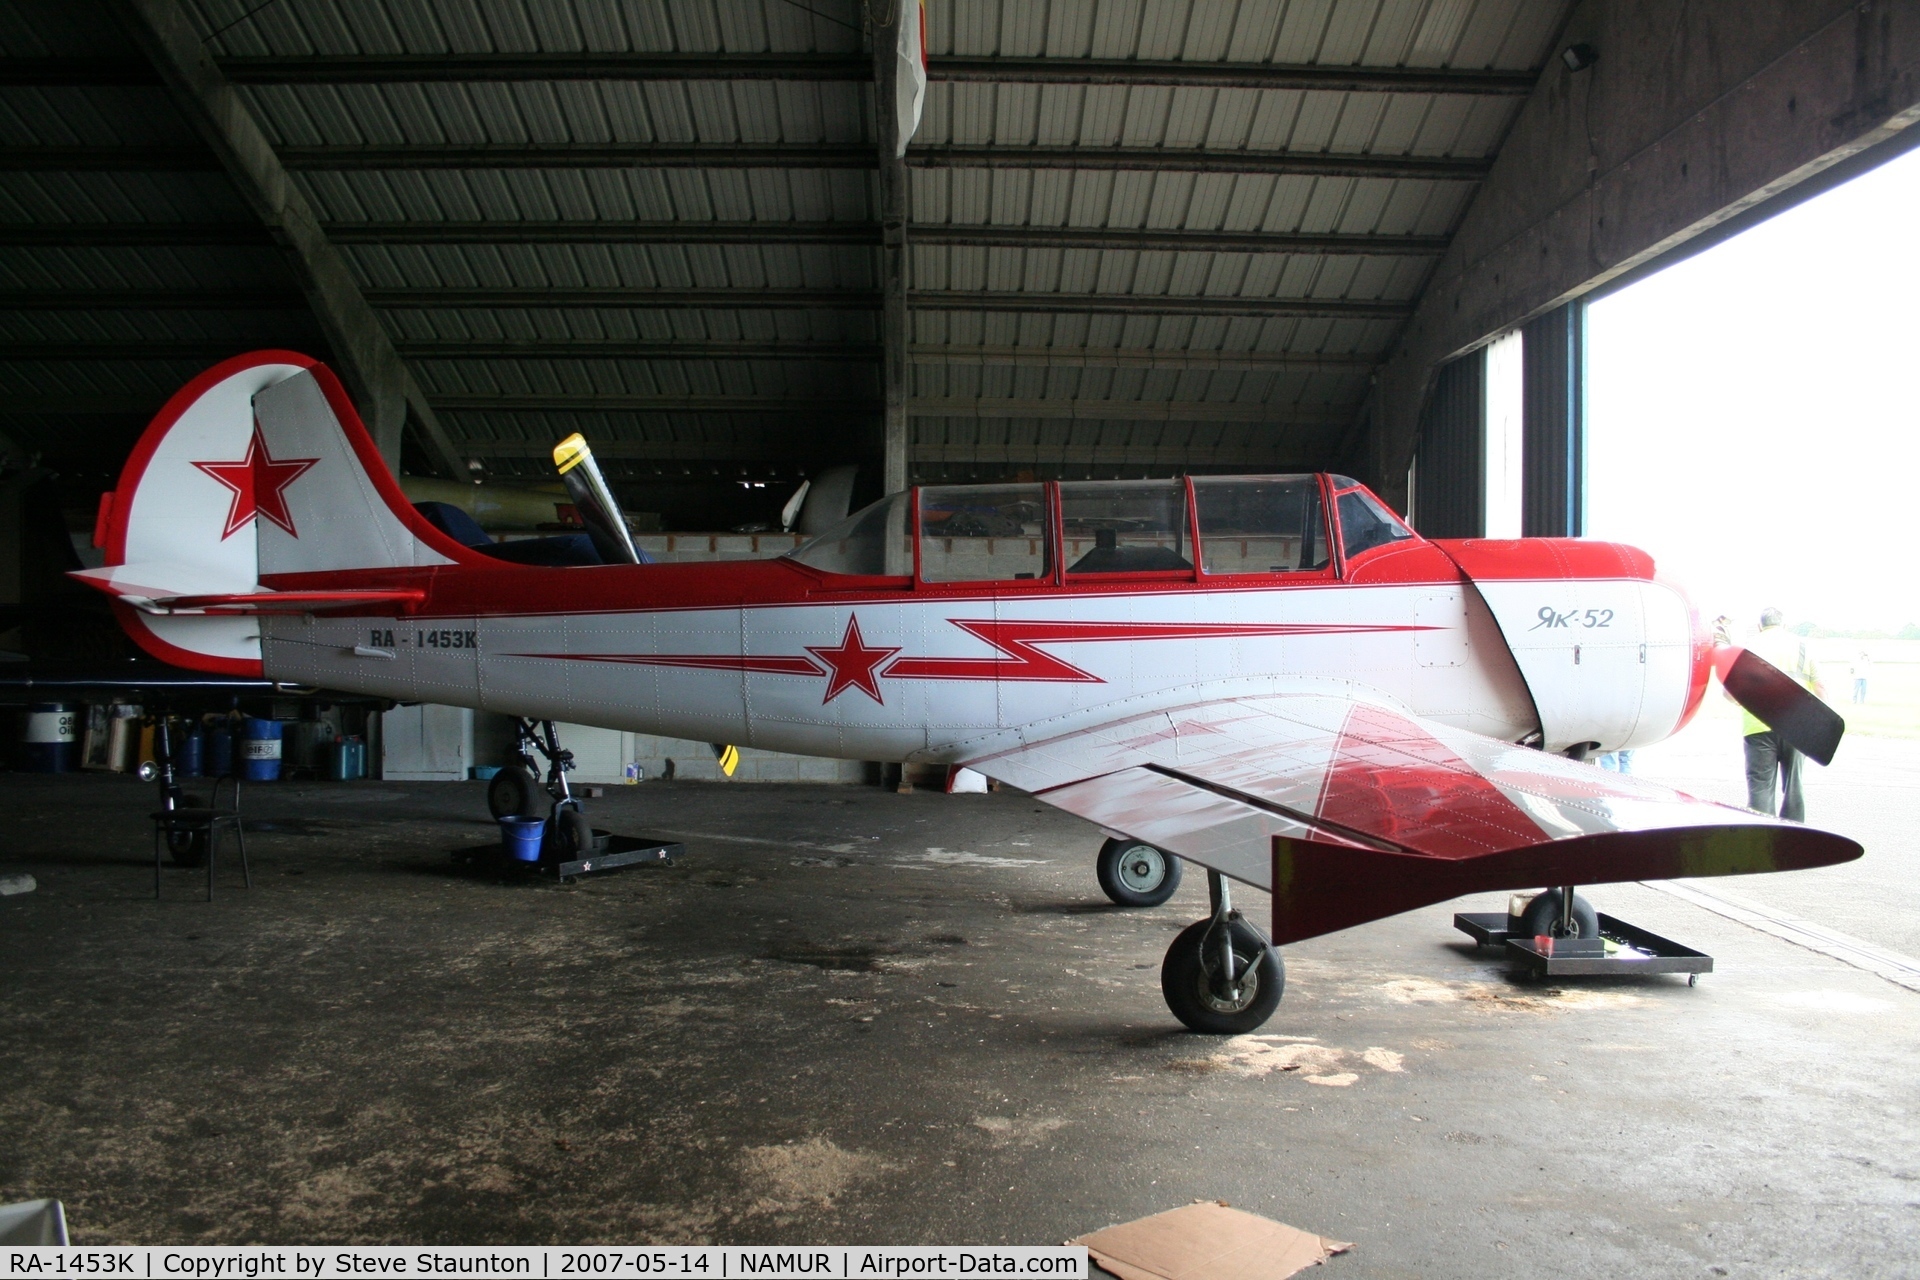 RA-1453K, Yakovlev Yak-52 C/N 899409, Taken on an Aeroprint tour @ Namur